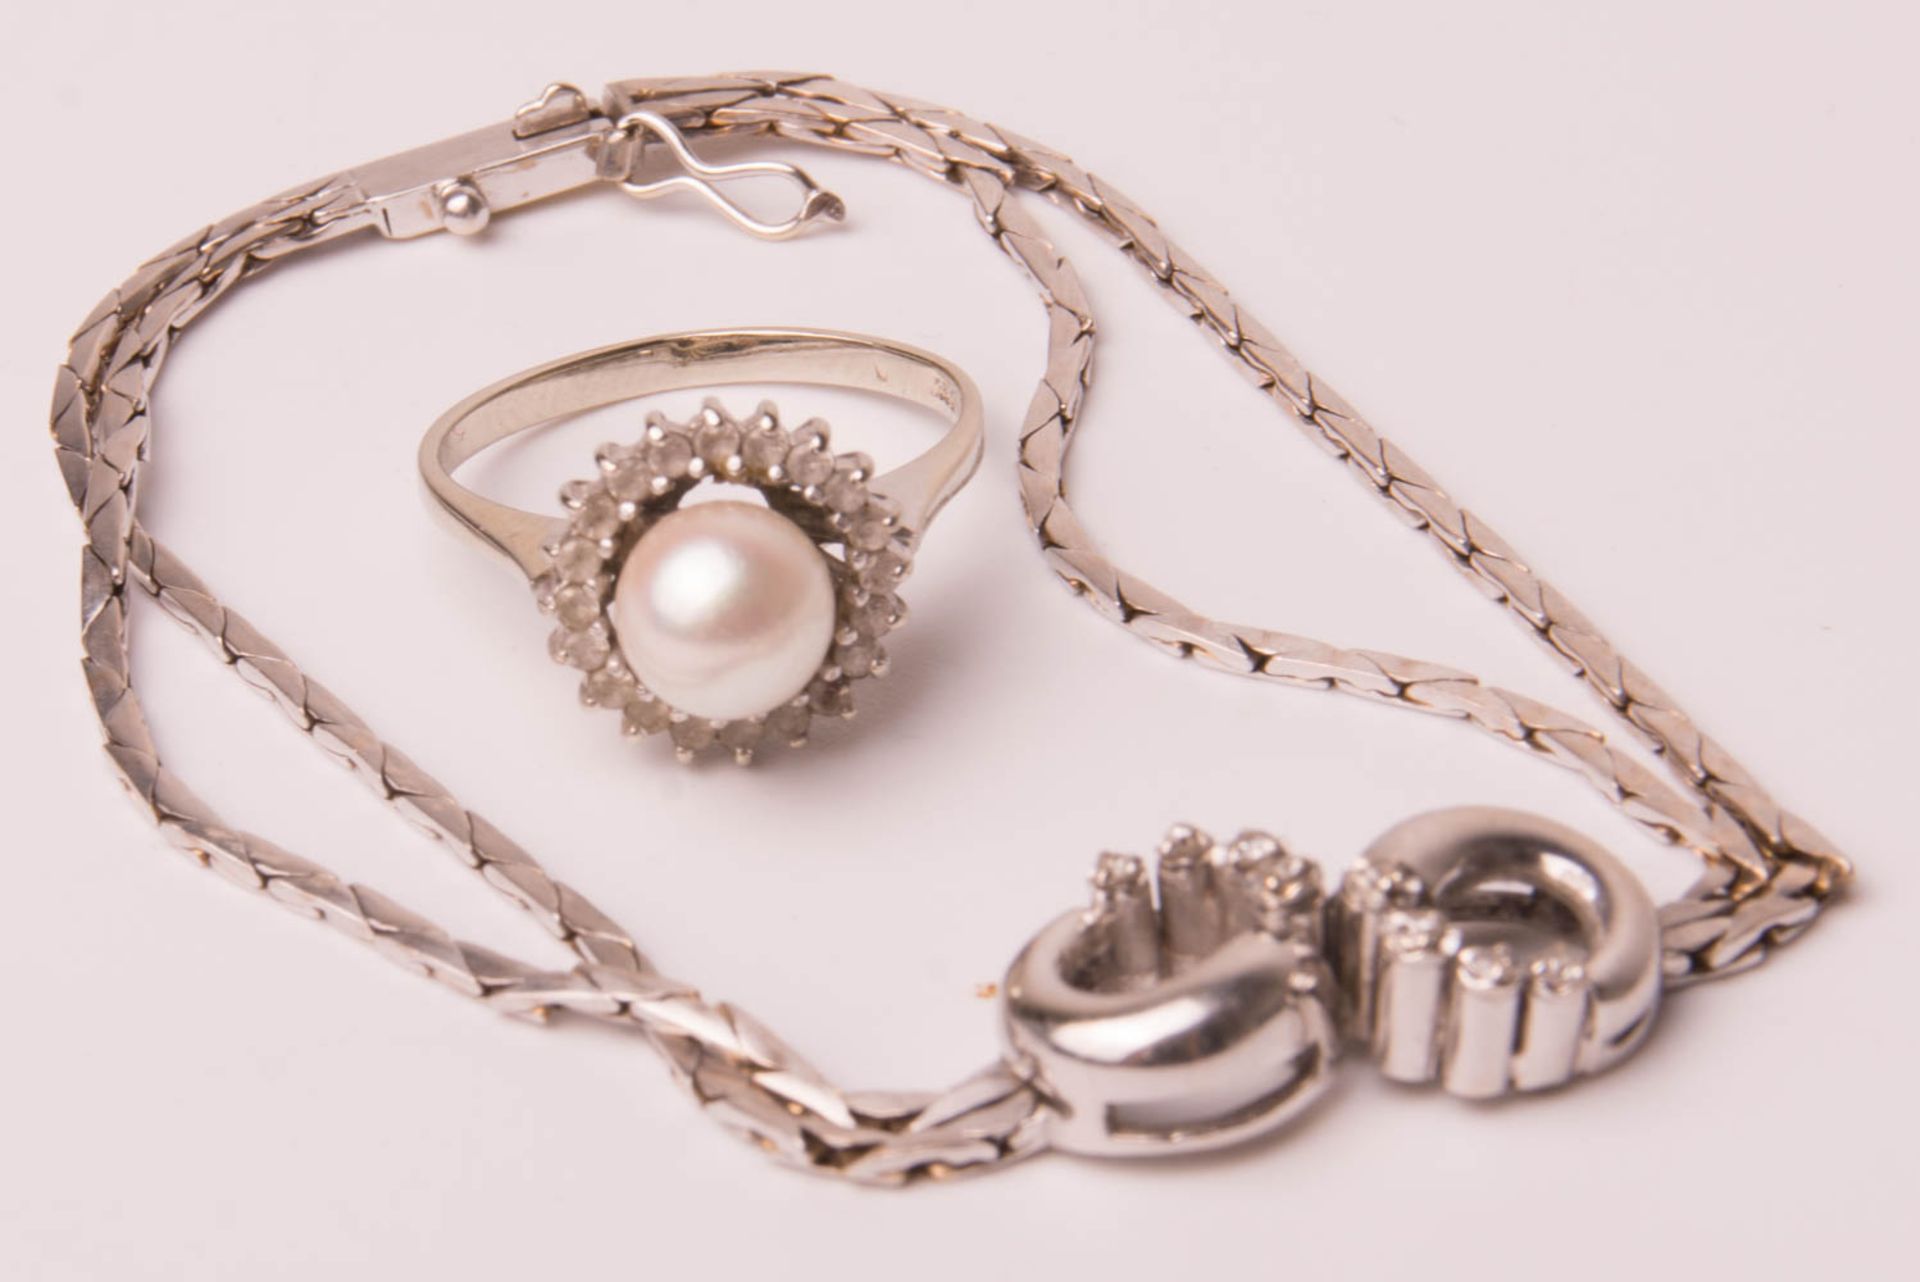 Armband und Ring mit Perle, 585/750er Weißgold.